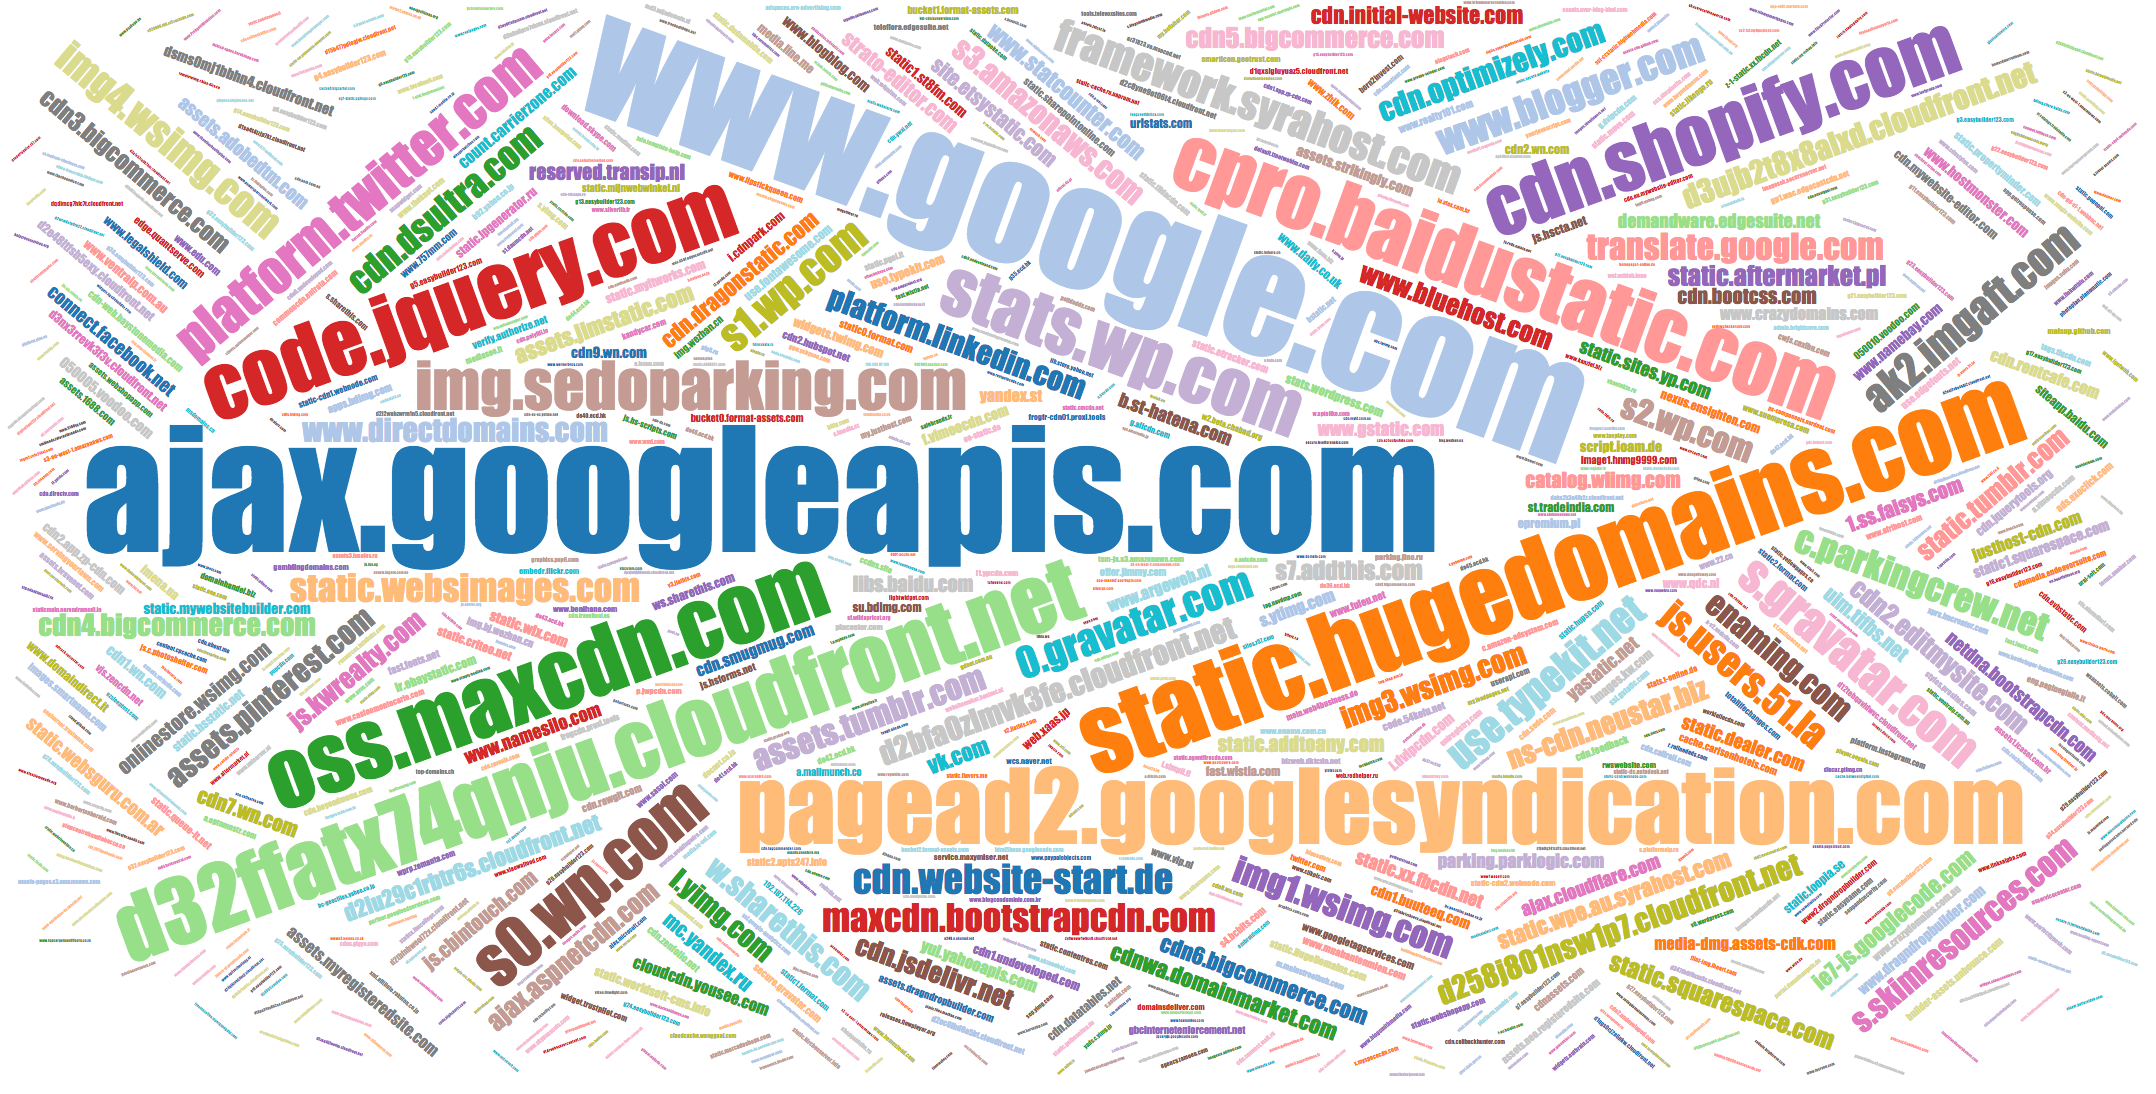 Popular names of JS domains ajax.googleapis.com, static.parastorage.com, etc.